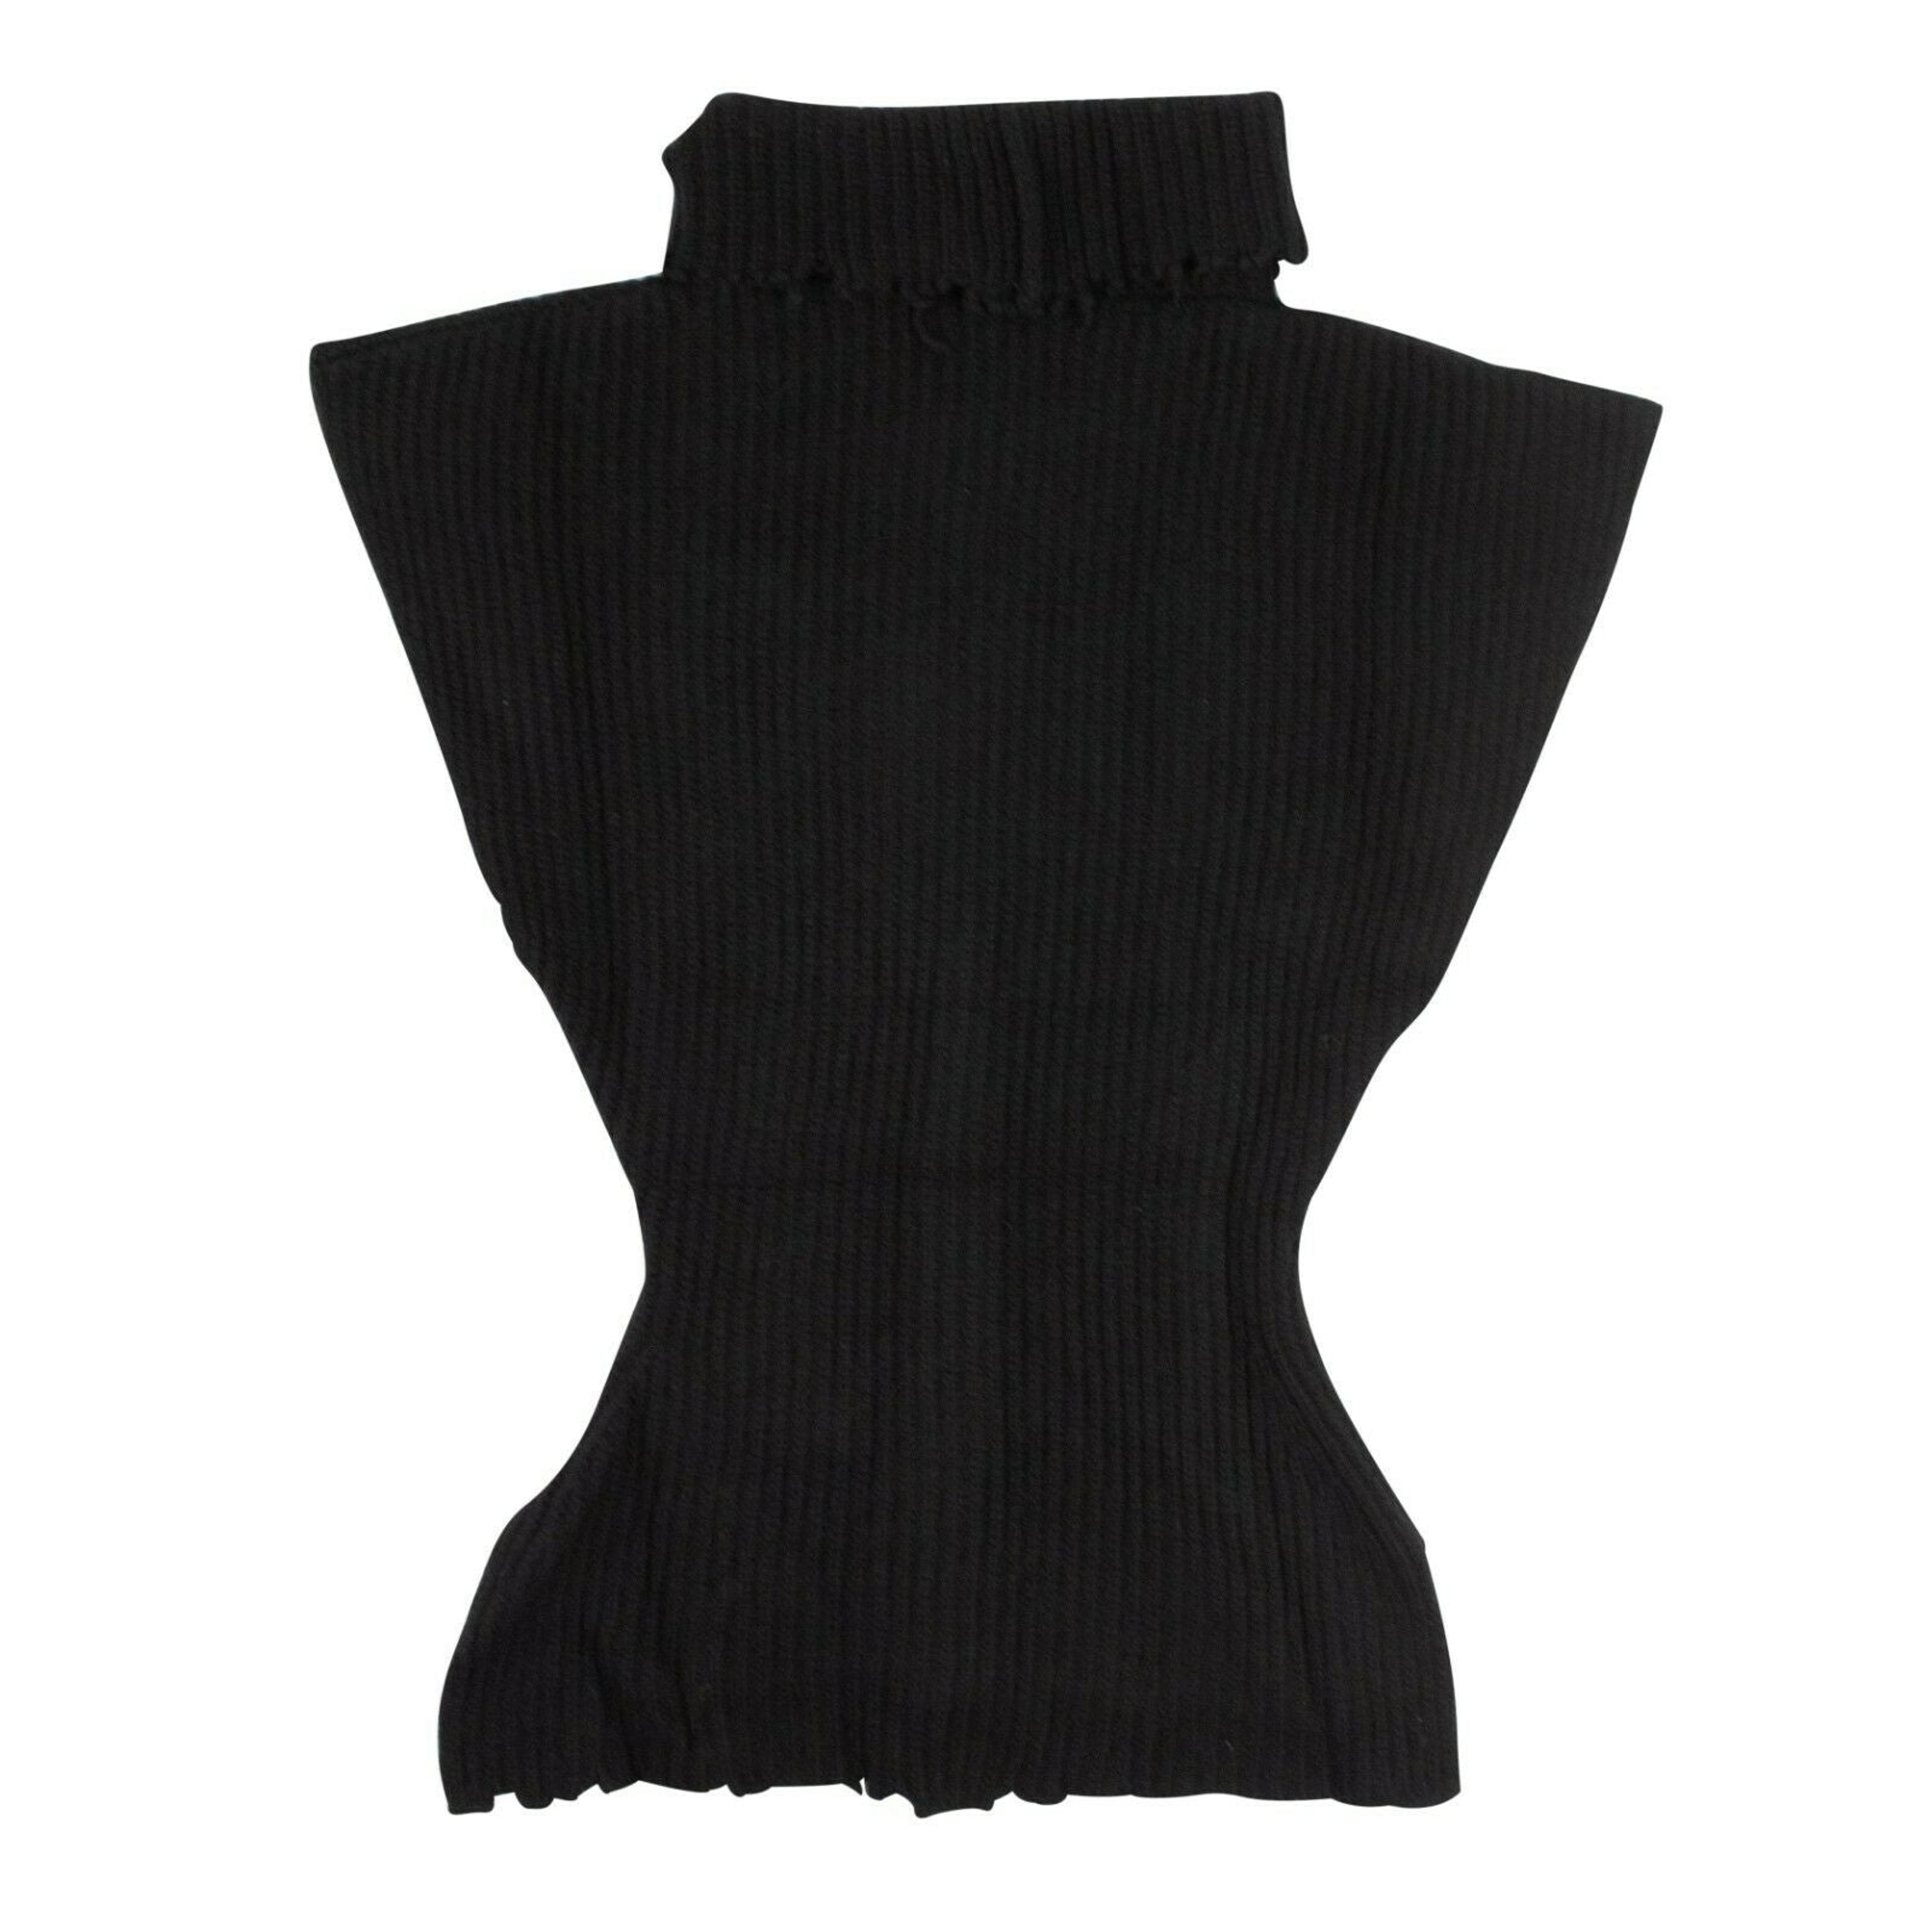 Alternate View 1 of Women's Black Wool Roll Neck Asymmetric Sweater